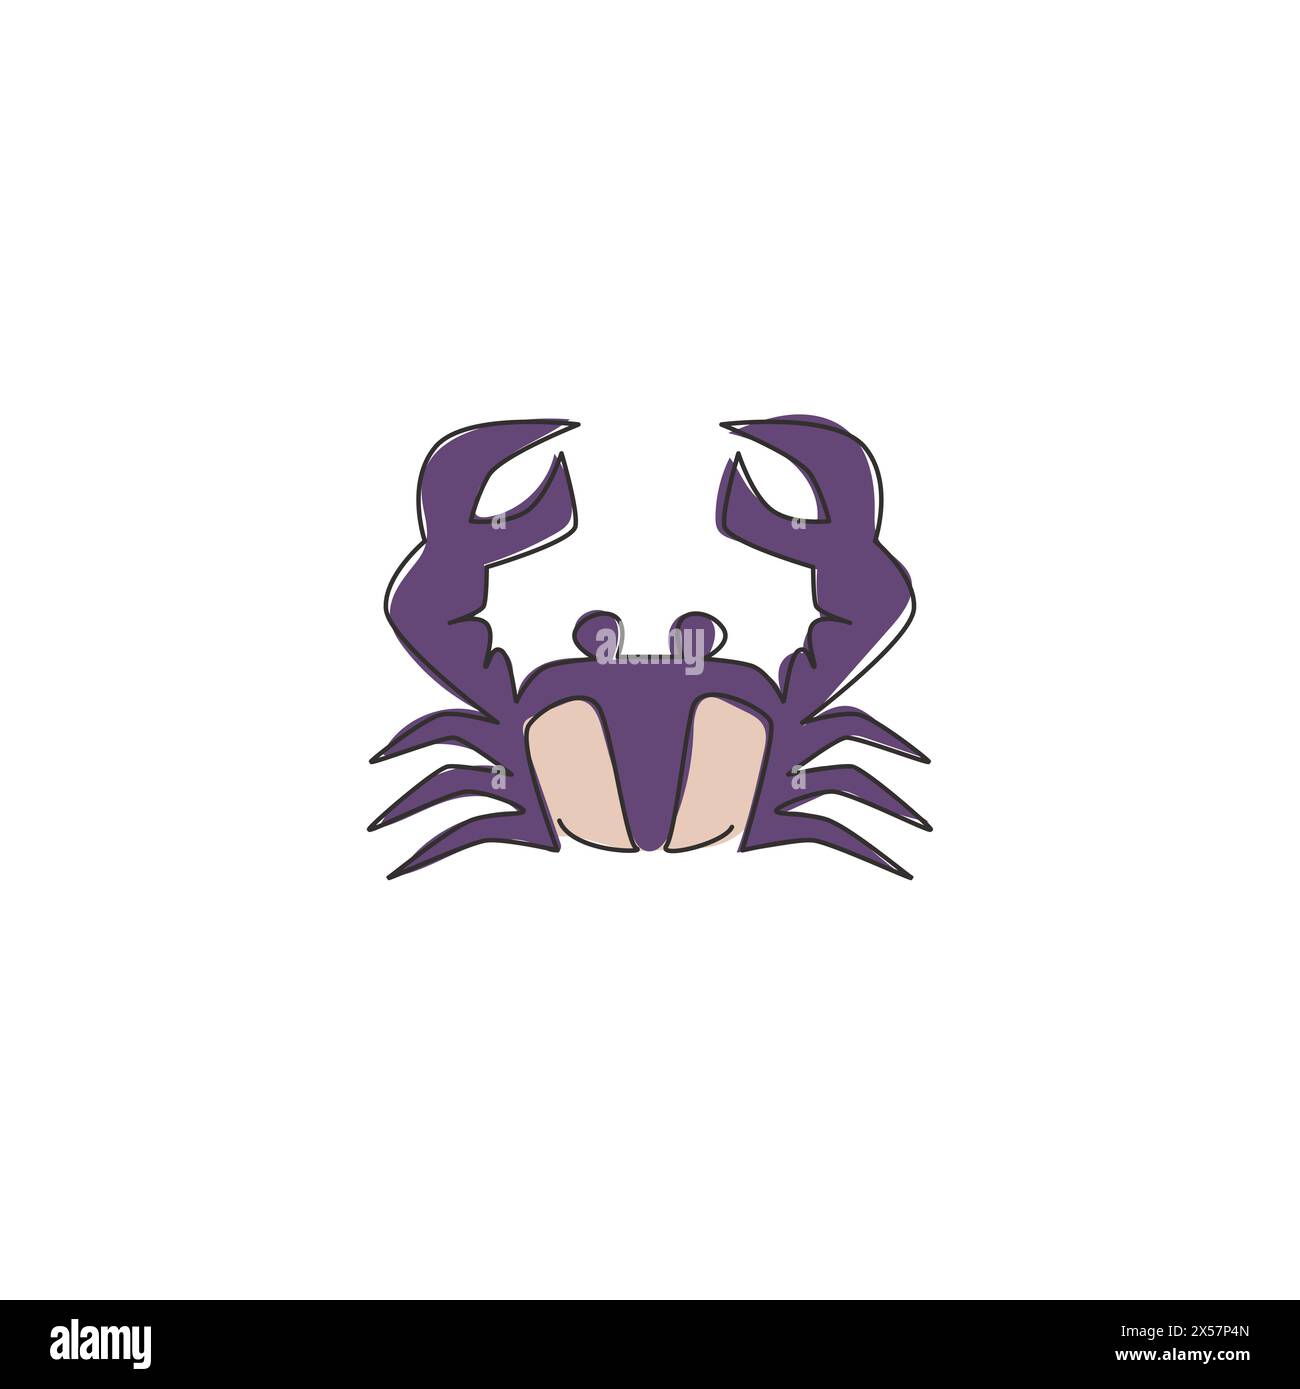 Dessin de ligne continue simple de petit crabe avec grande griffe pour l'identité de logo de fruits de mer. Concept d'animal marin mignon pour l'icône de restaurant chinois. Dynamique activée Illustration de Vecteur